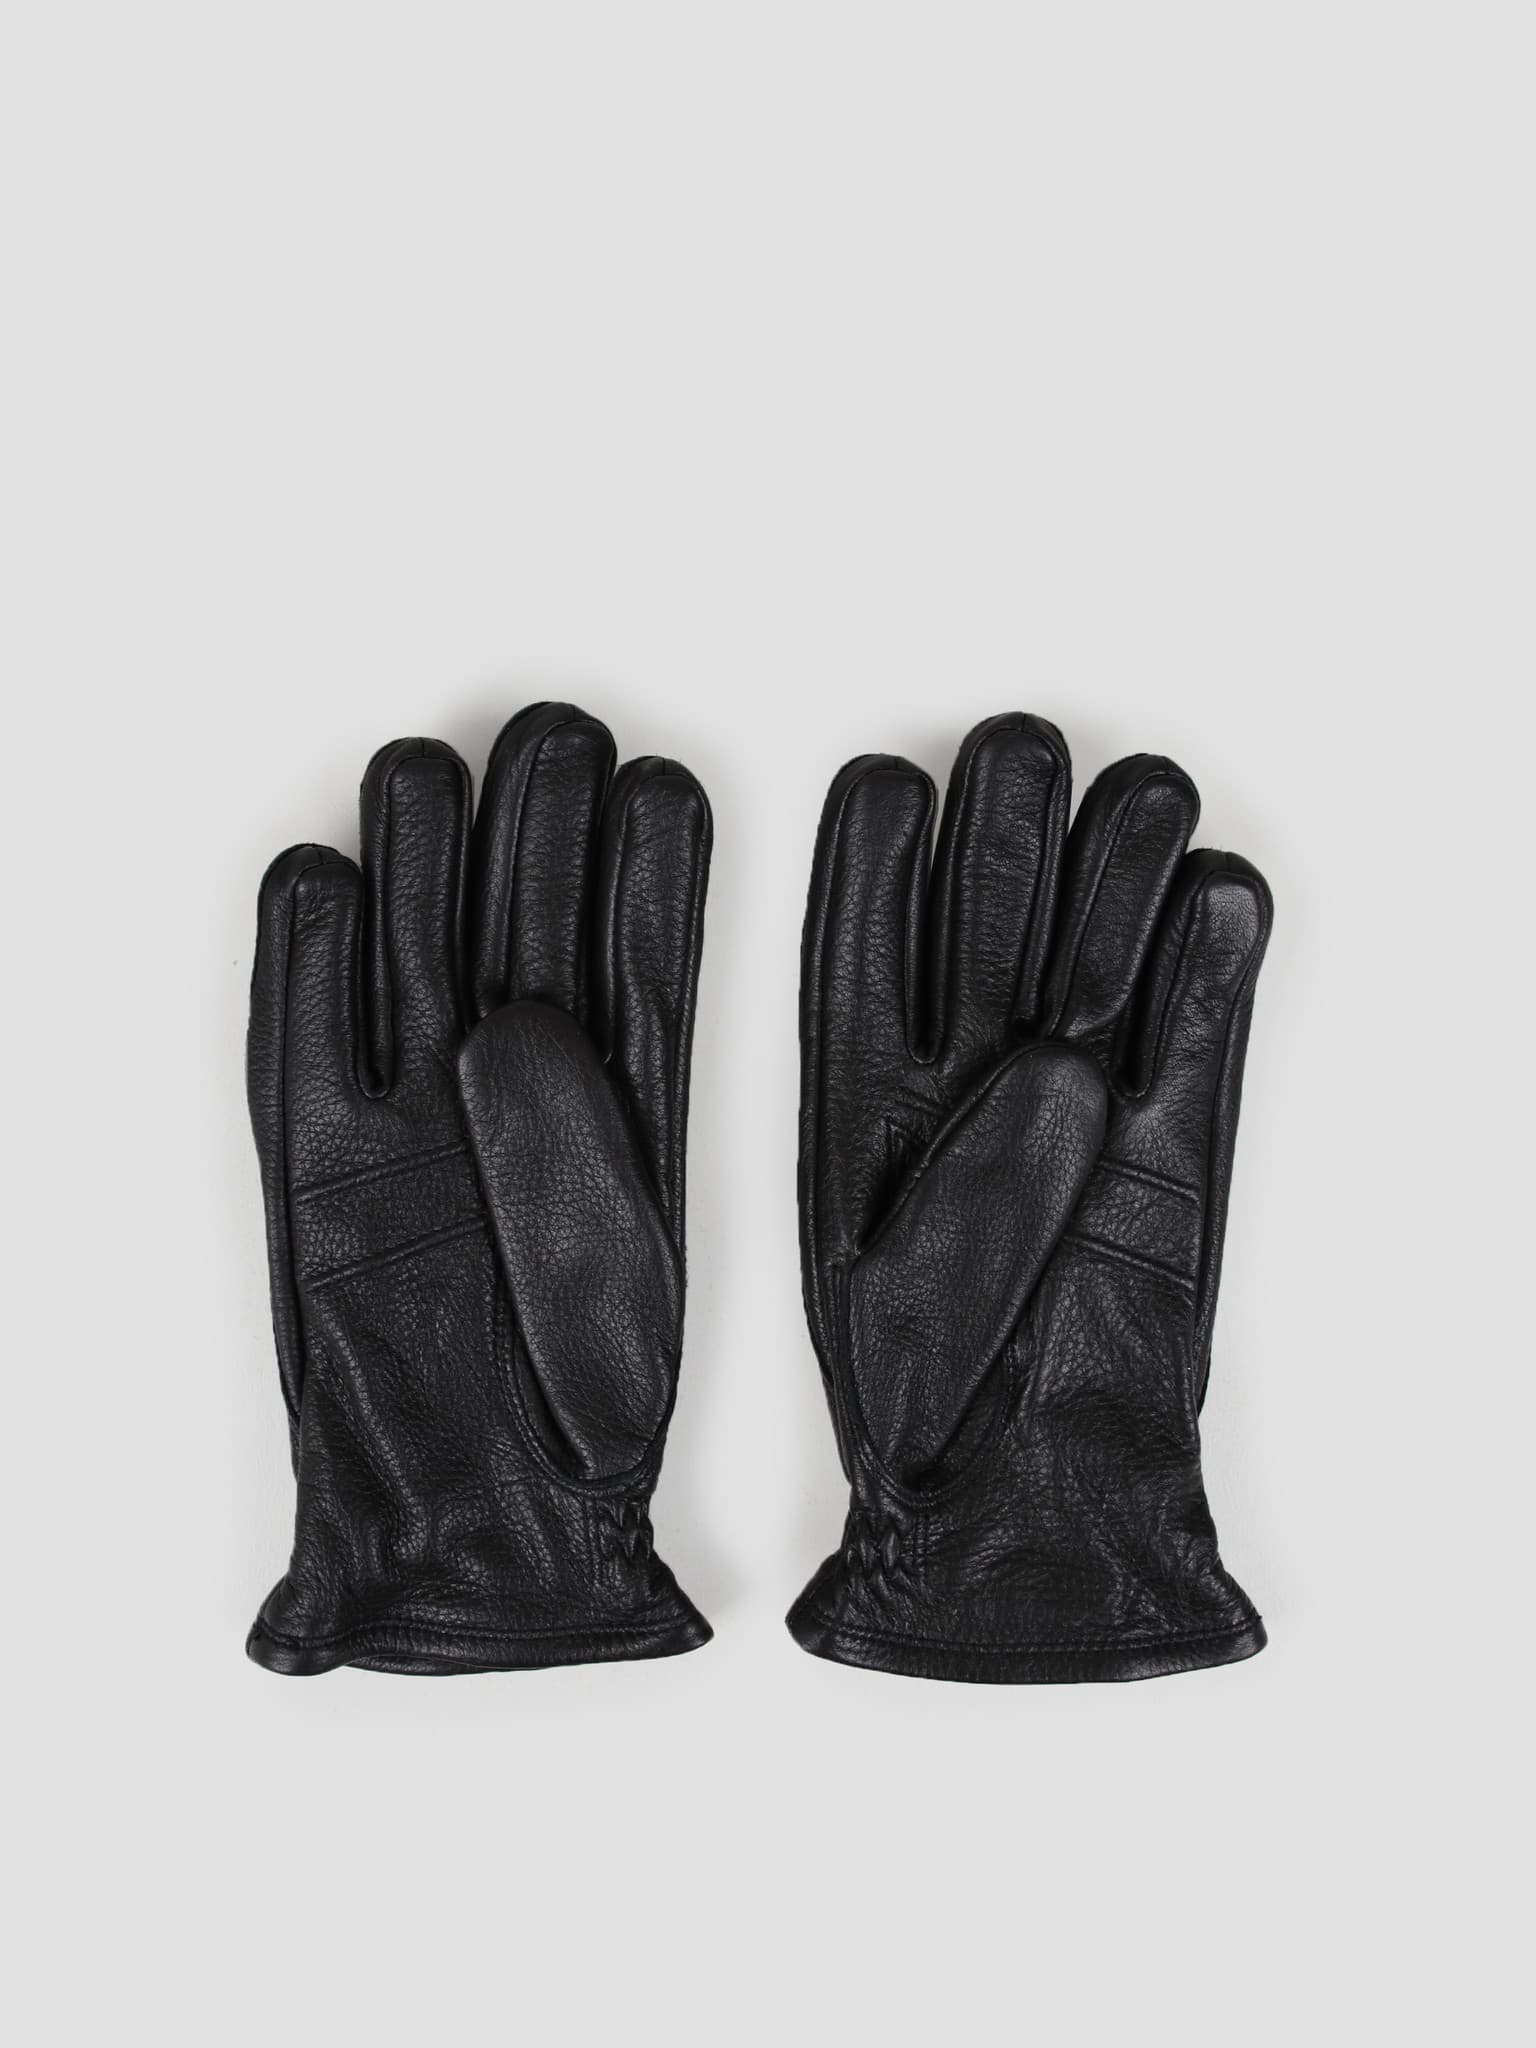 Särna Glove Black 20890